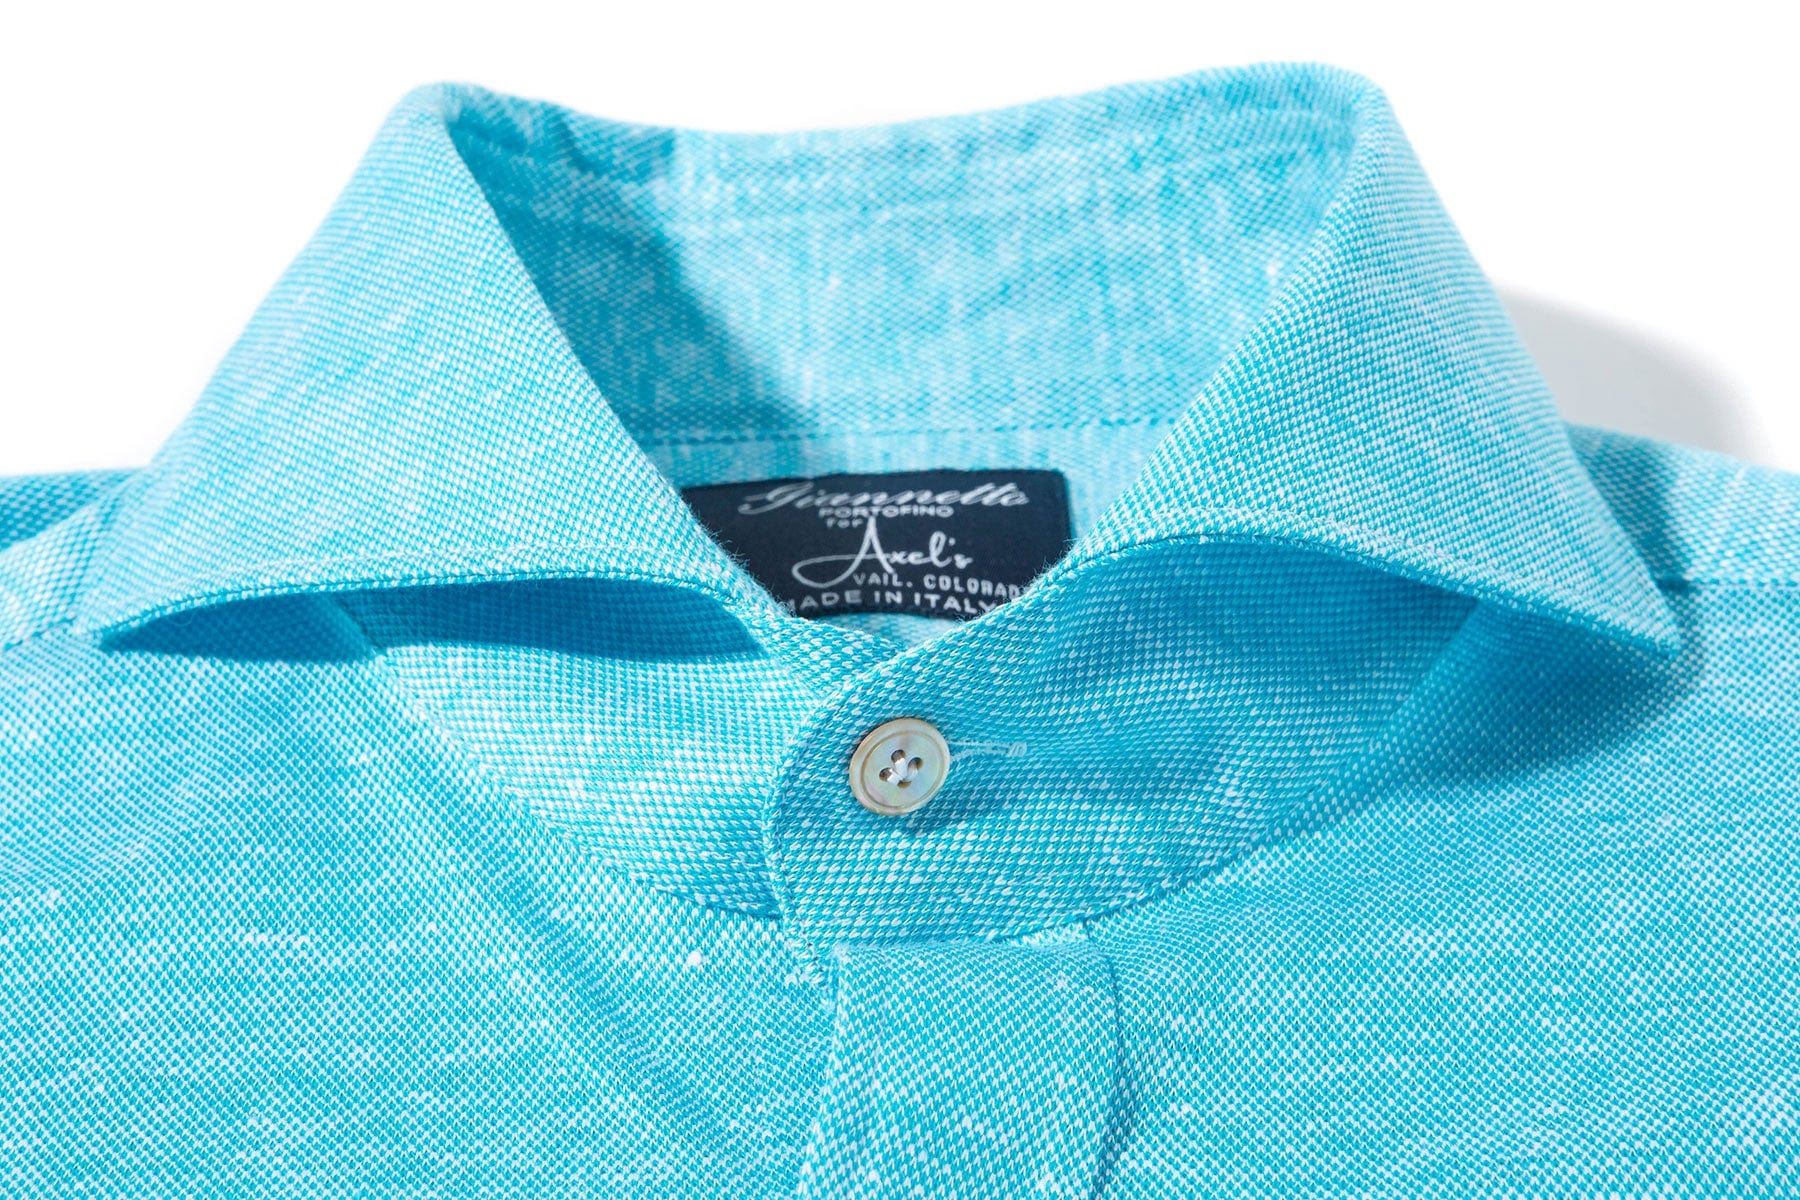 Schwinn Cotton Linen Shirt in Turquoise - AXEL'S